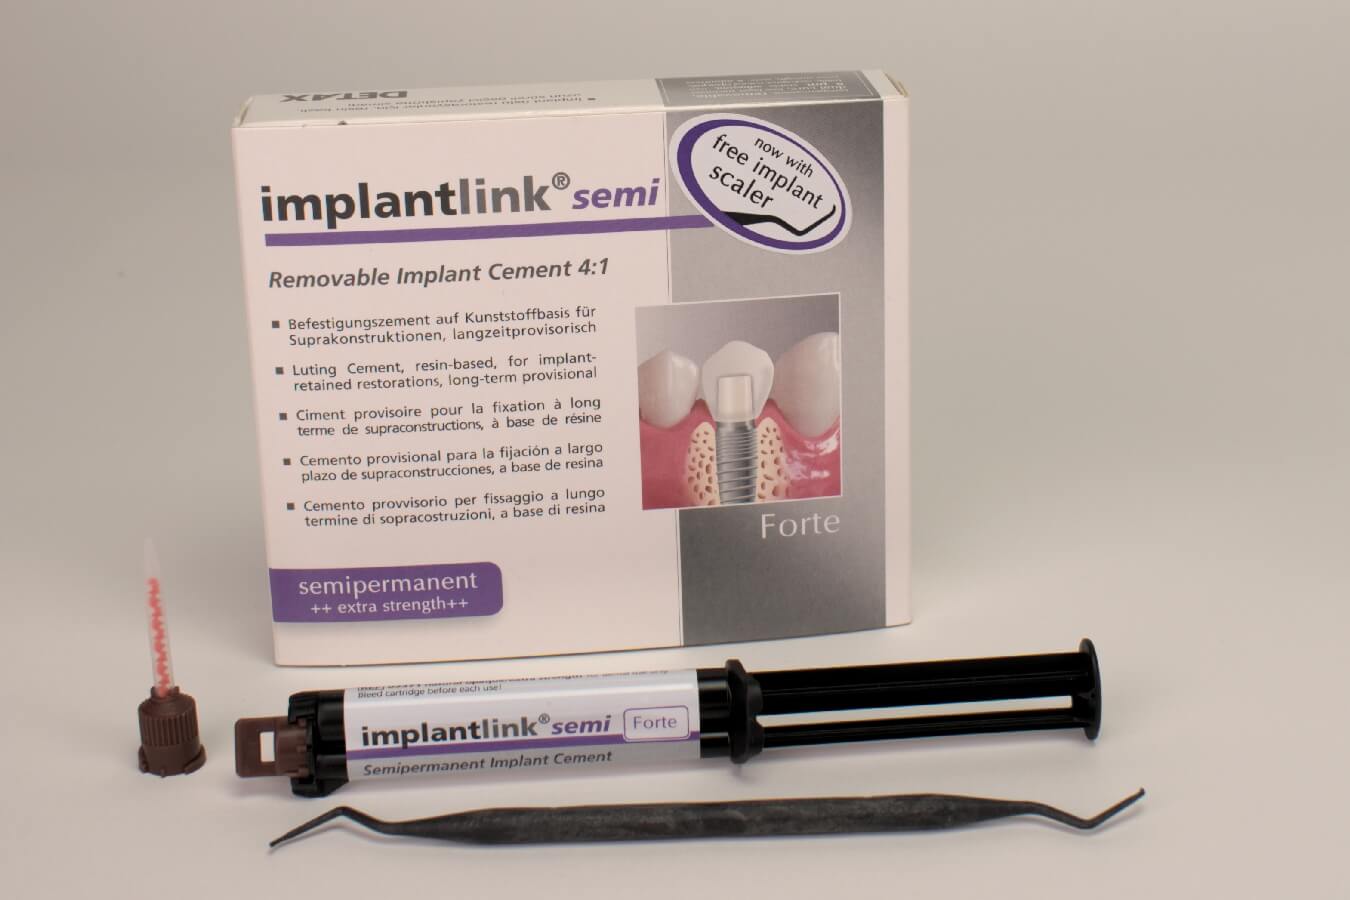 Implantlink semi Forte, Standardpackung